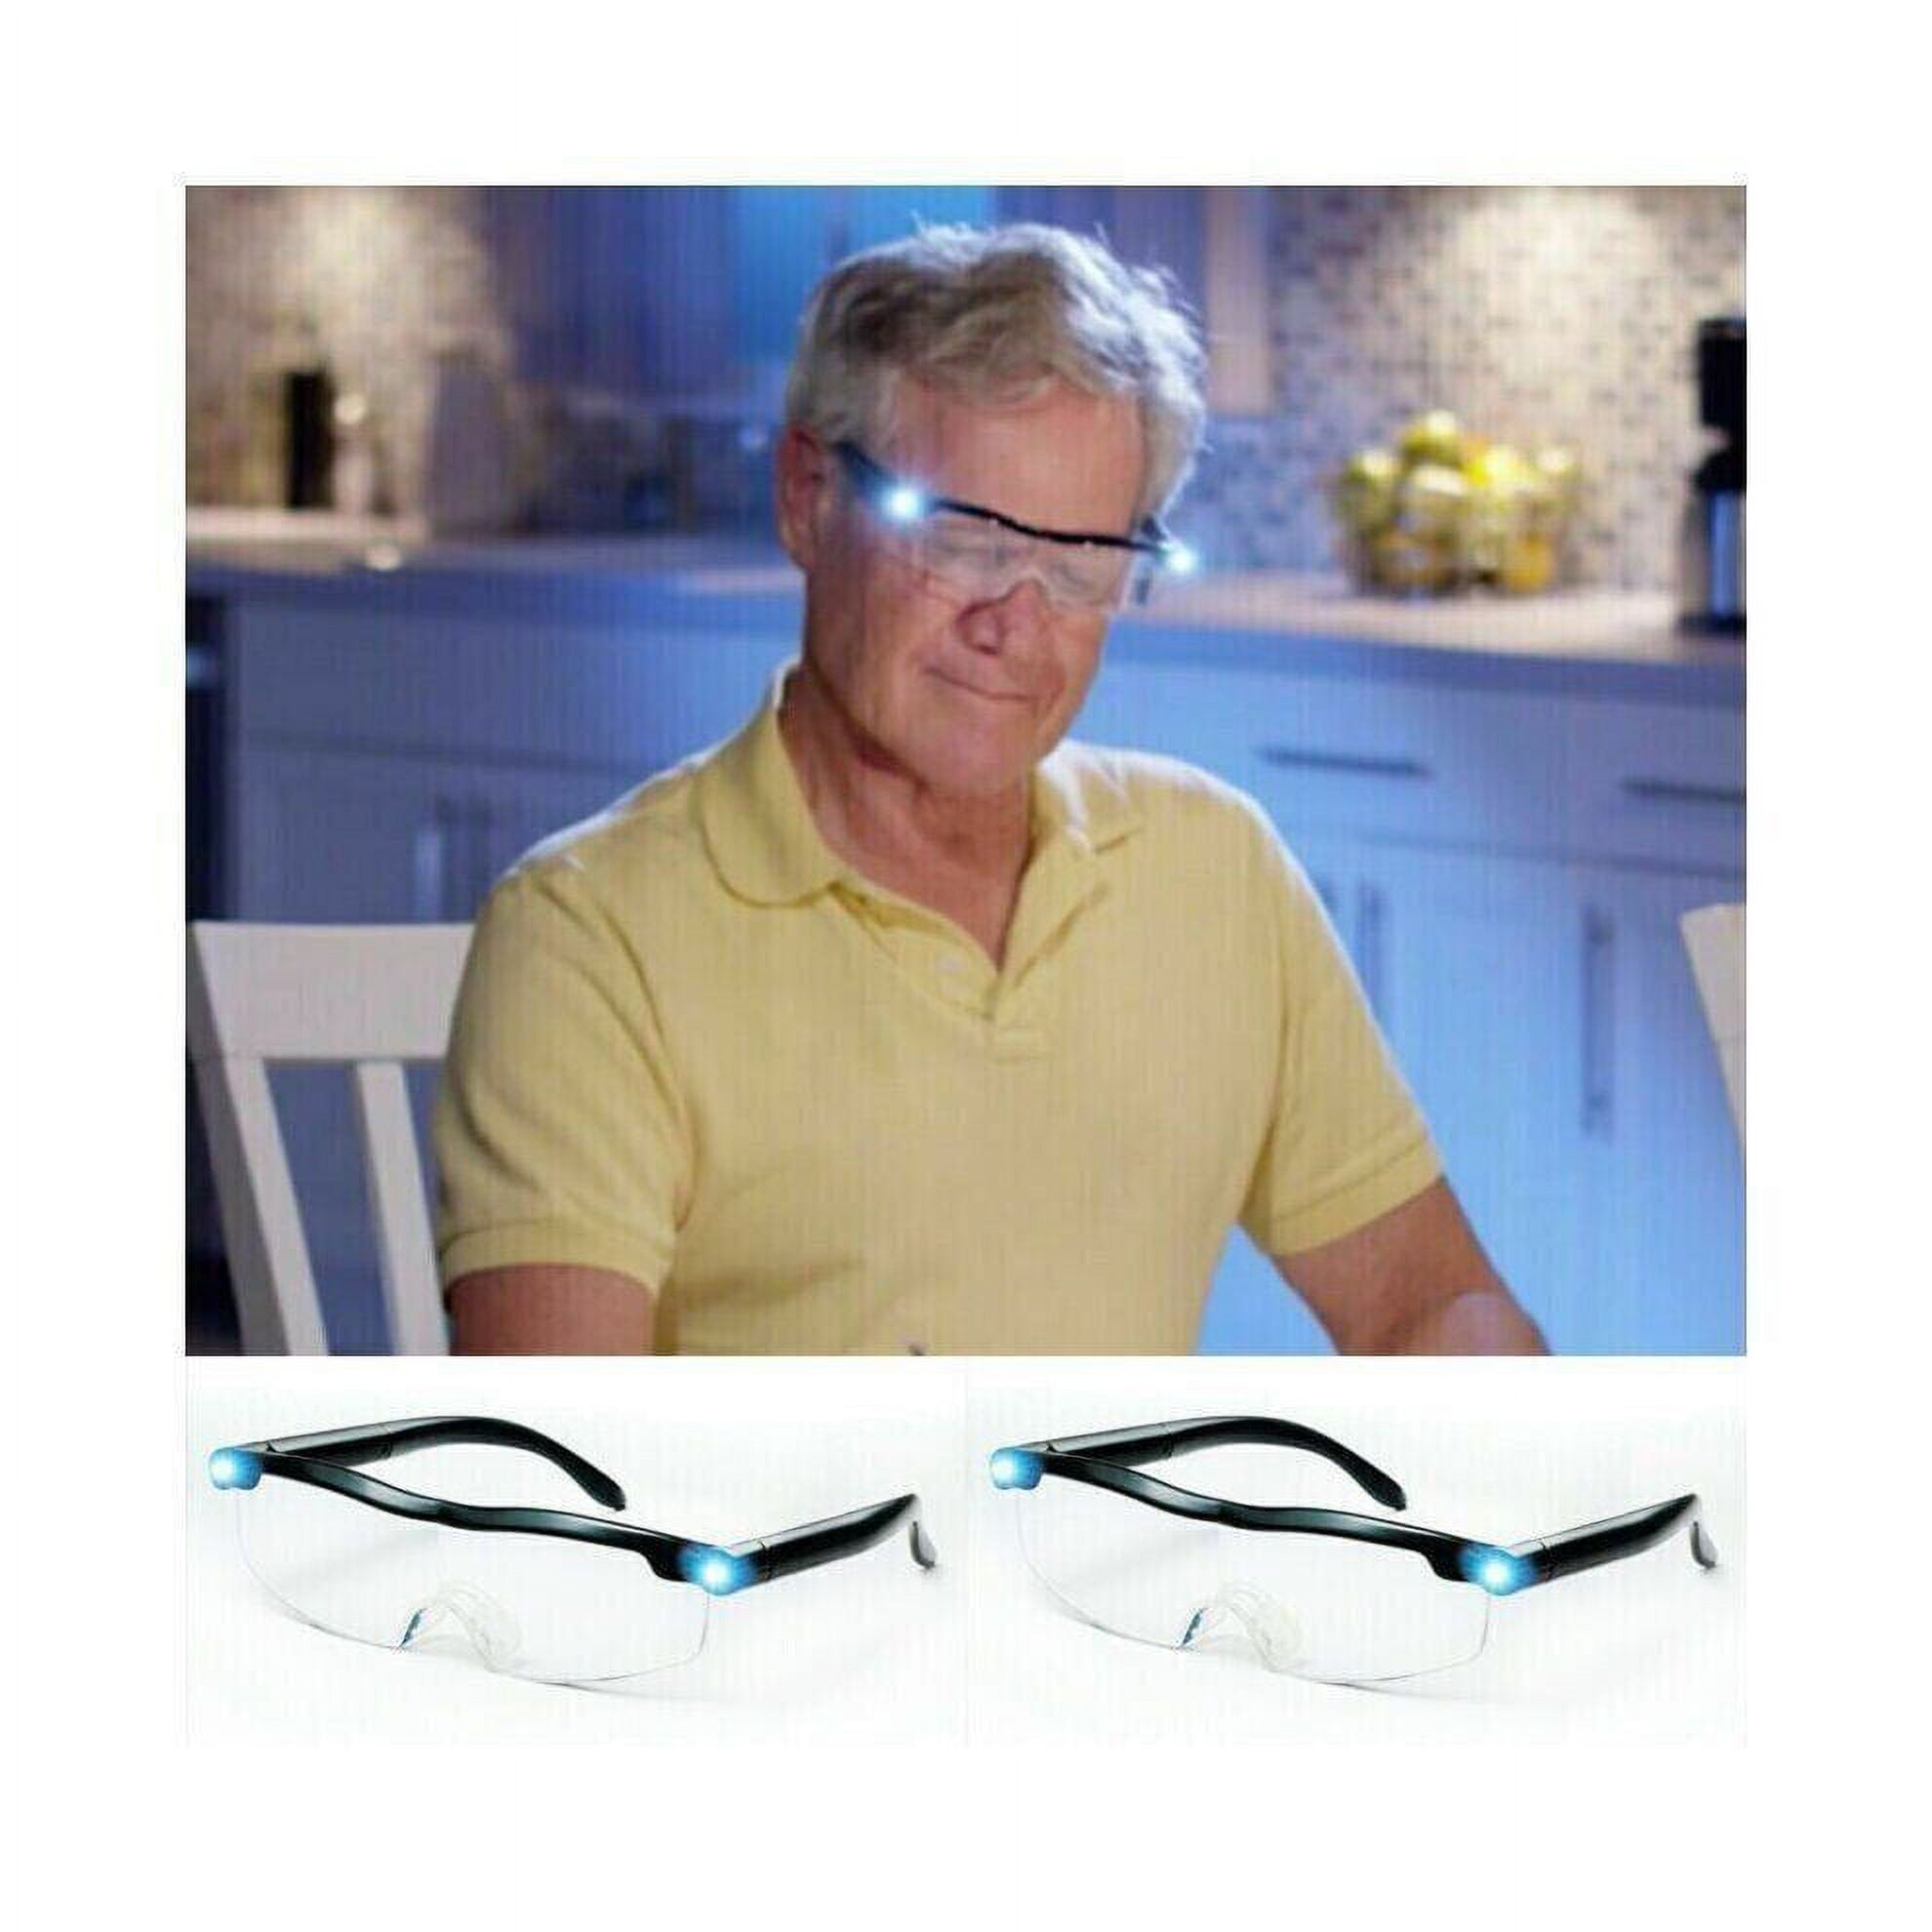 LED Magnifying Eyewear Mighty Sight